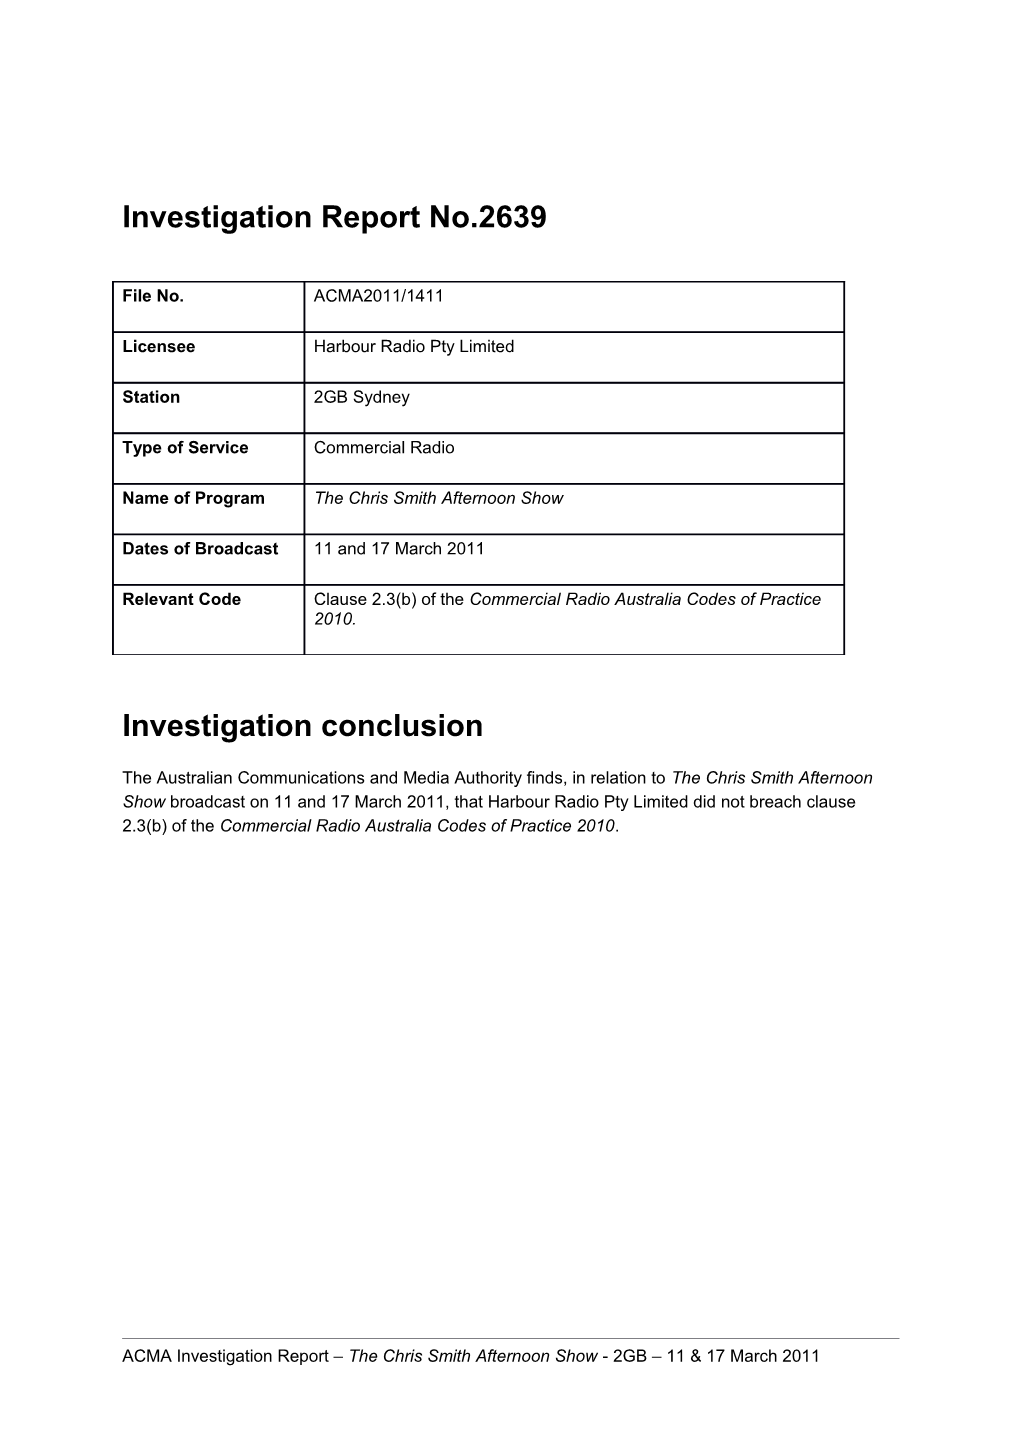 2GB - ACMA Investigation Report 2639